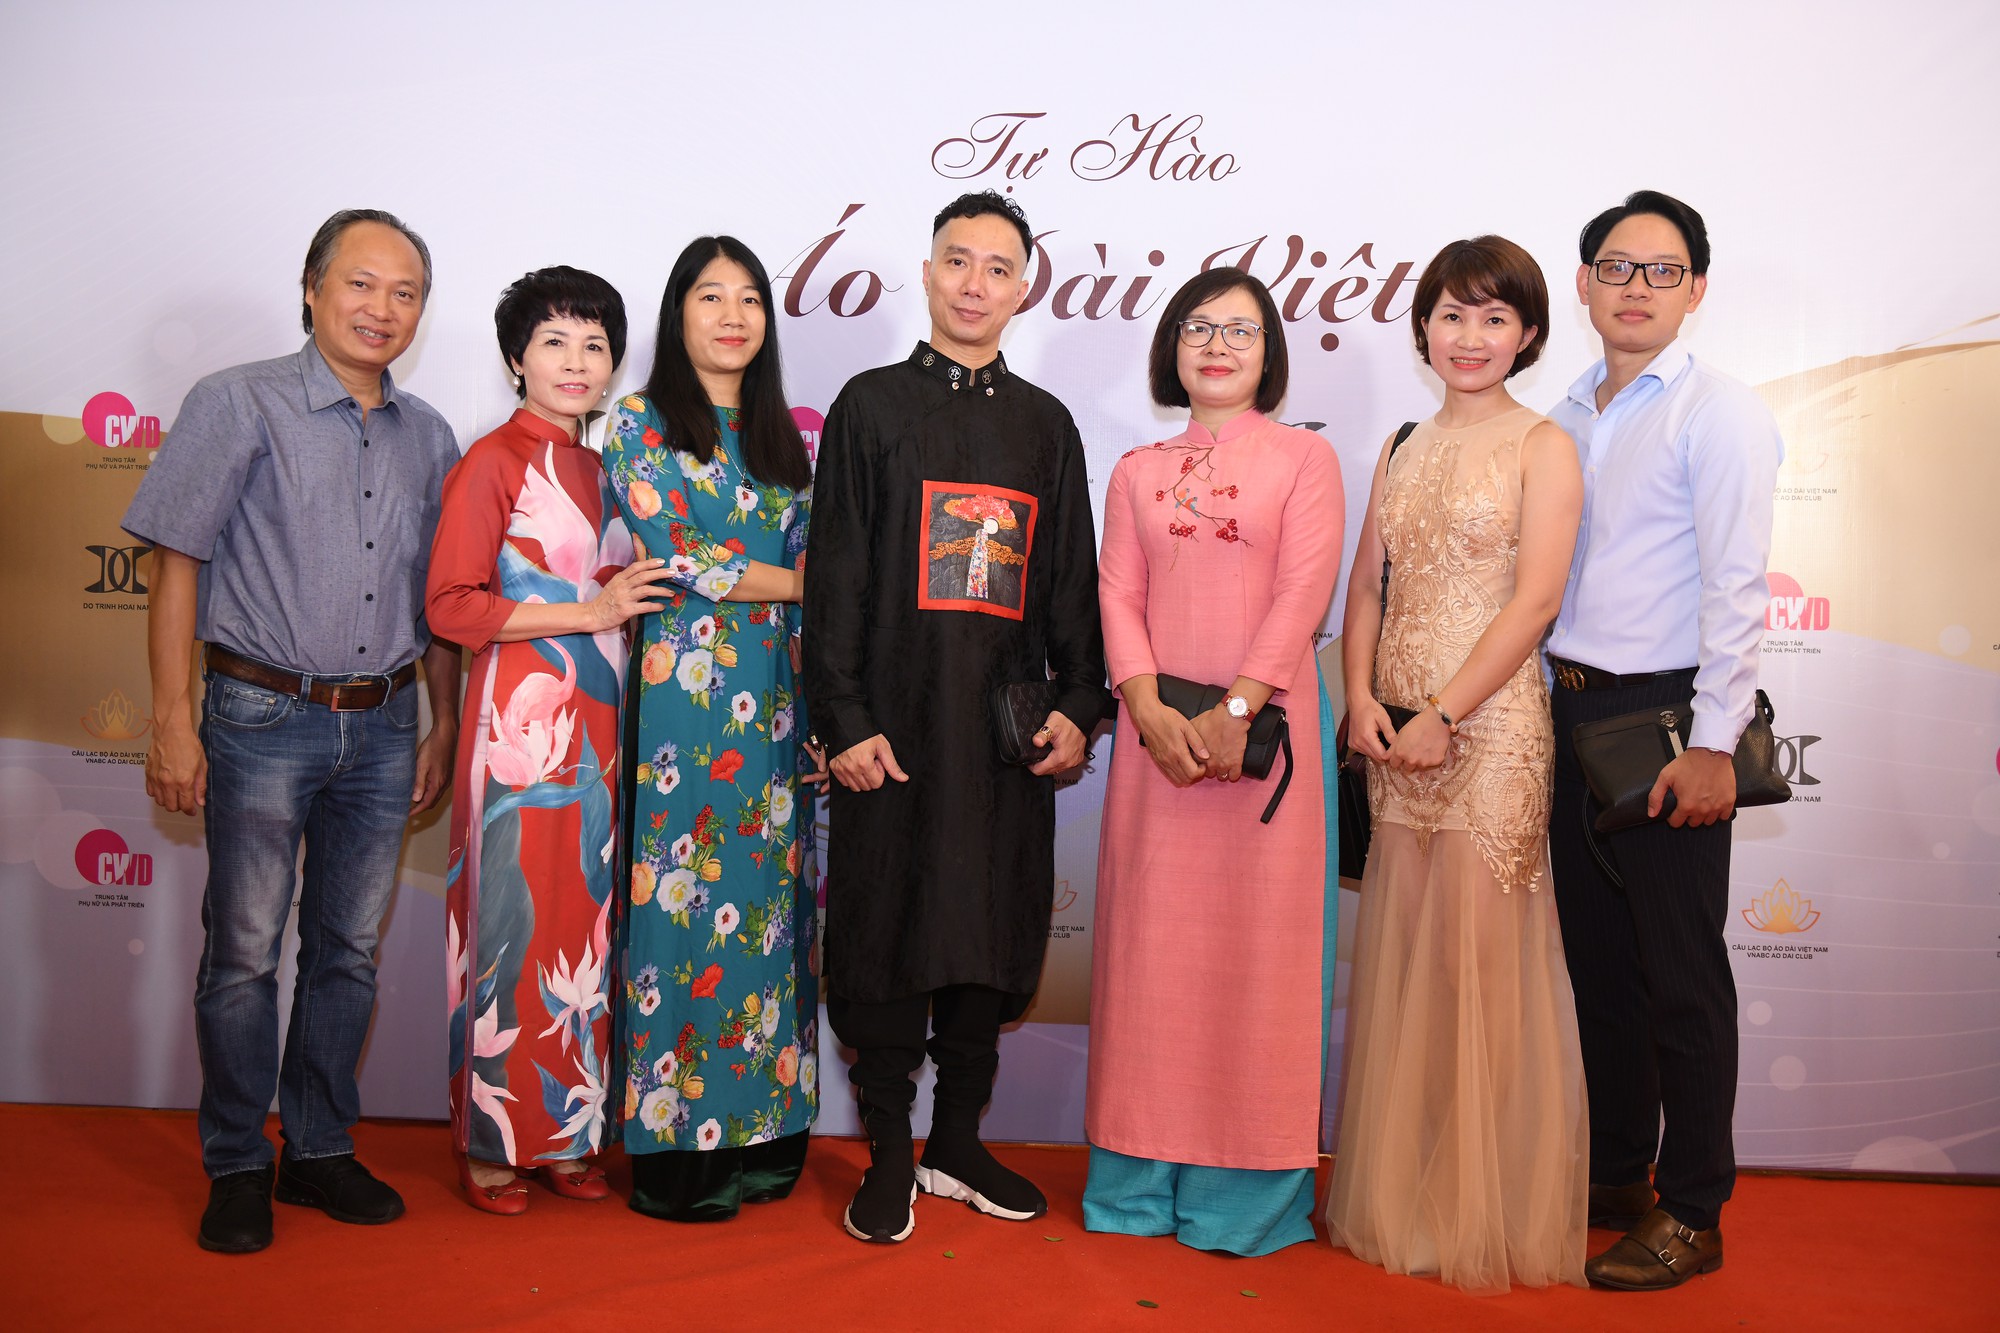 Dc Nguyễn Thị Minh Hạnh –Chánh văn phòng sở Du Lịch cùng các Cán Bộ trong sở du lichjtham dự chương trình